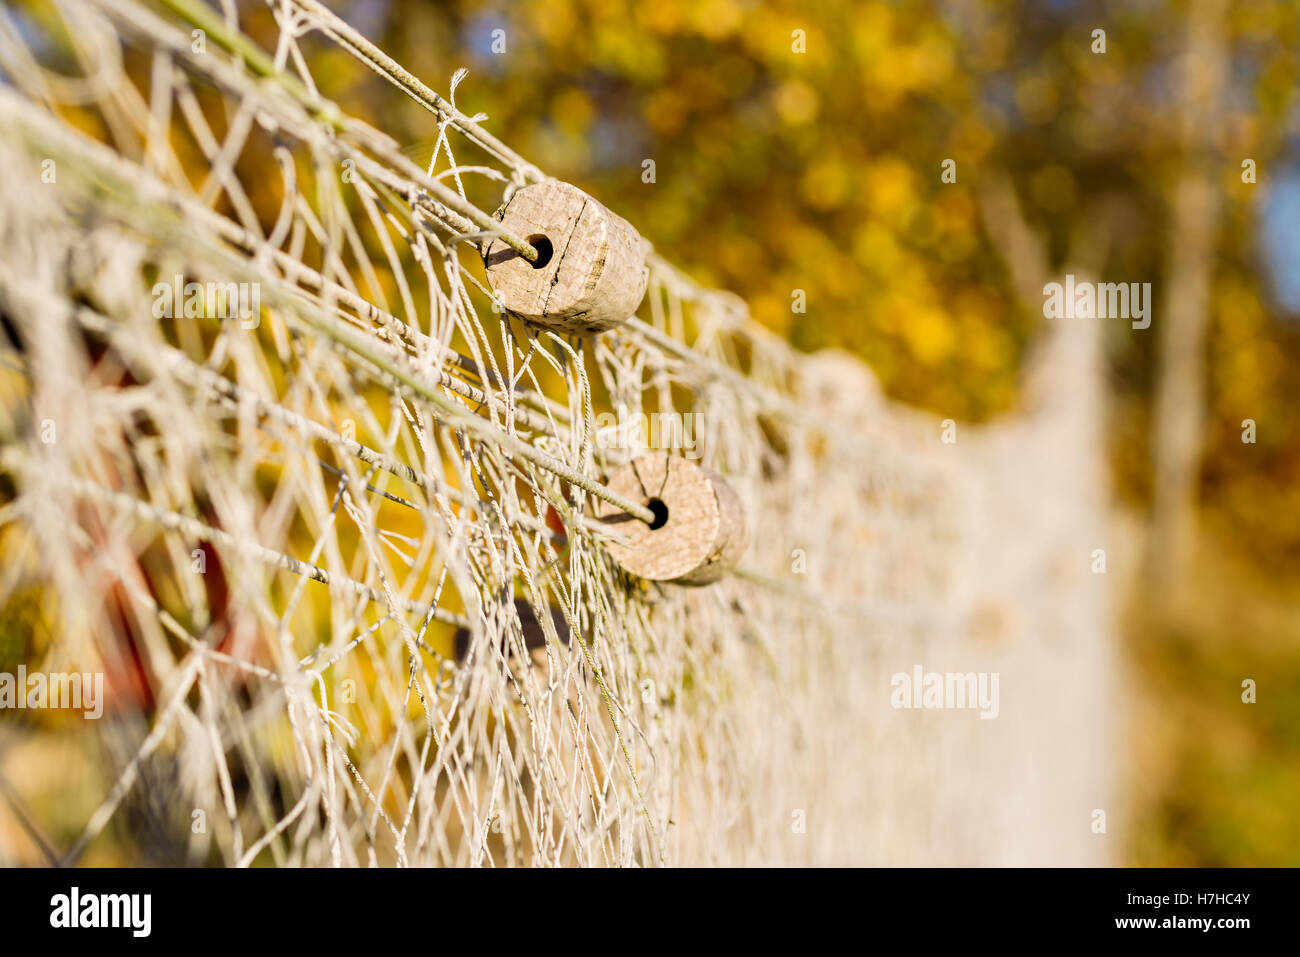 Kleine Kork schwimmt auf Netzstrümpfe zum Trocknen gehängt. Flachen Fokus auf Schwimmer und unscharfen Hintergrund. Stockfoto